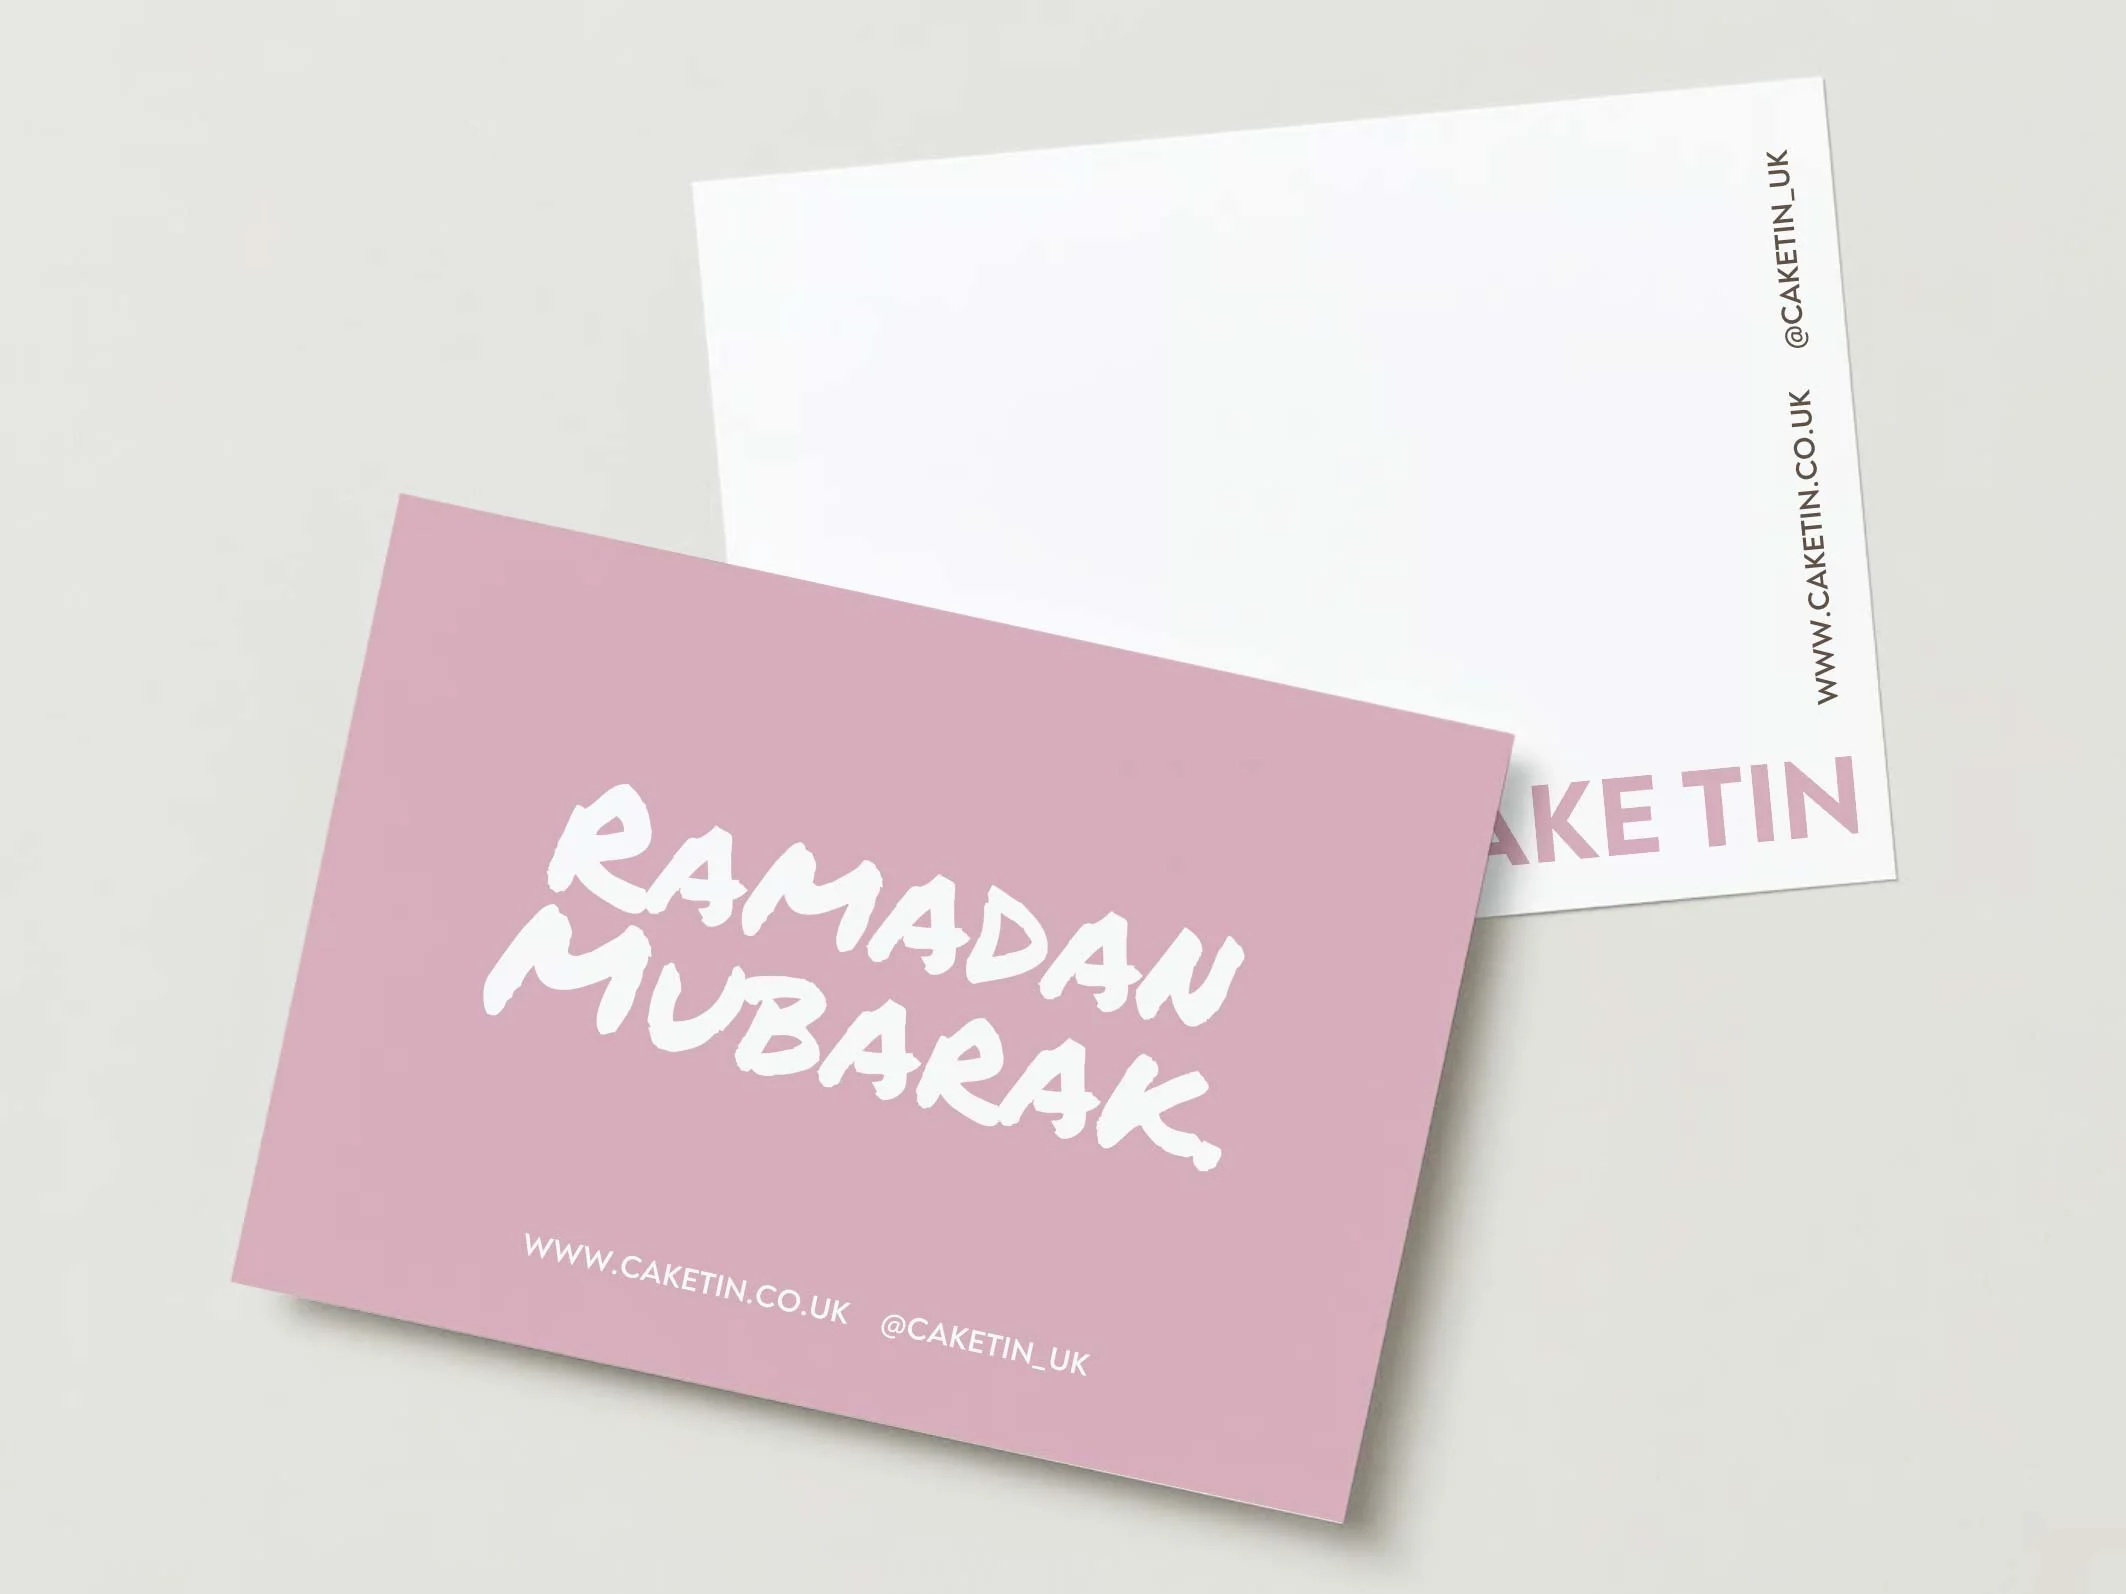 Ramadan Mubarak. Greeting card